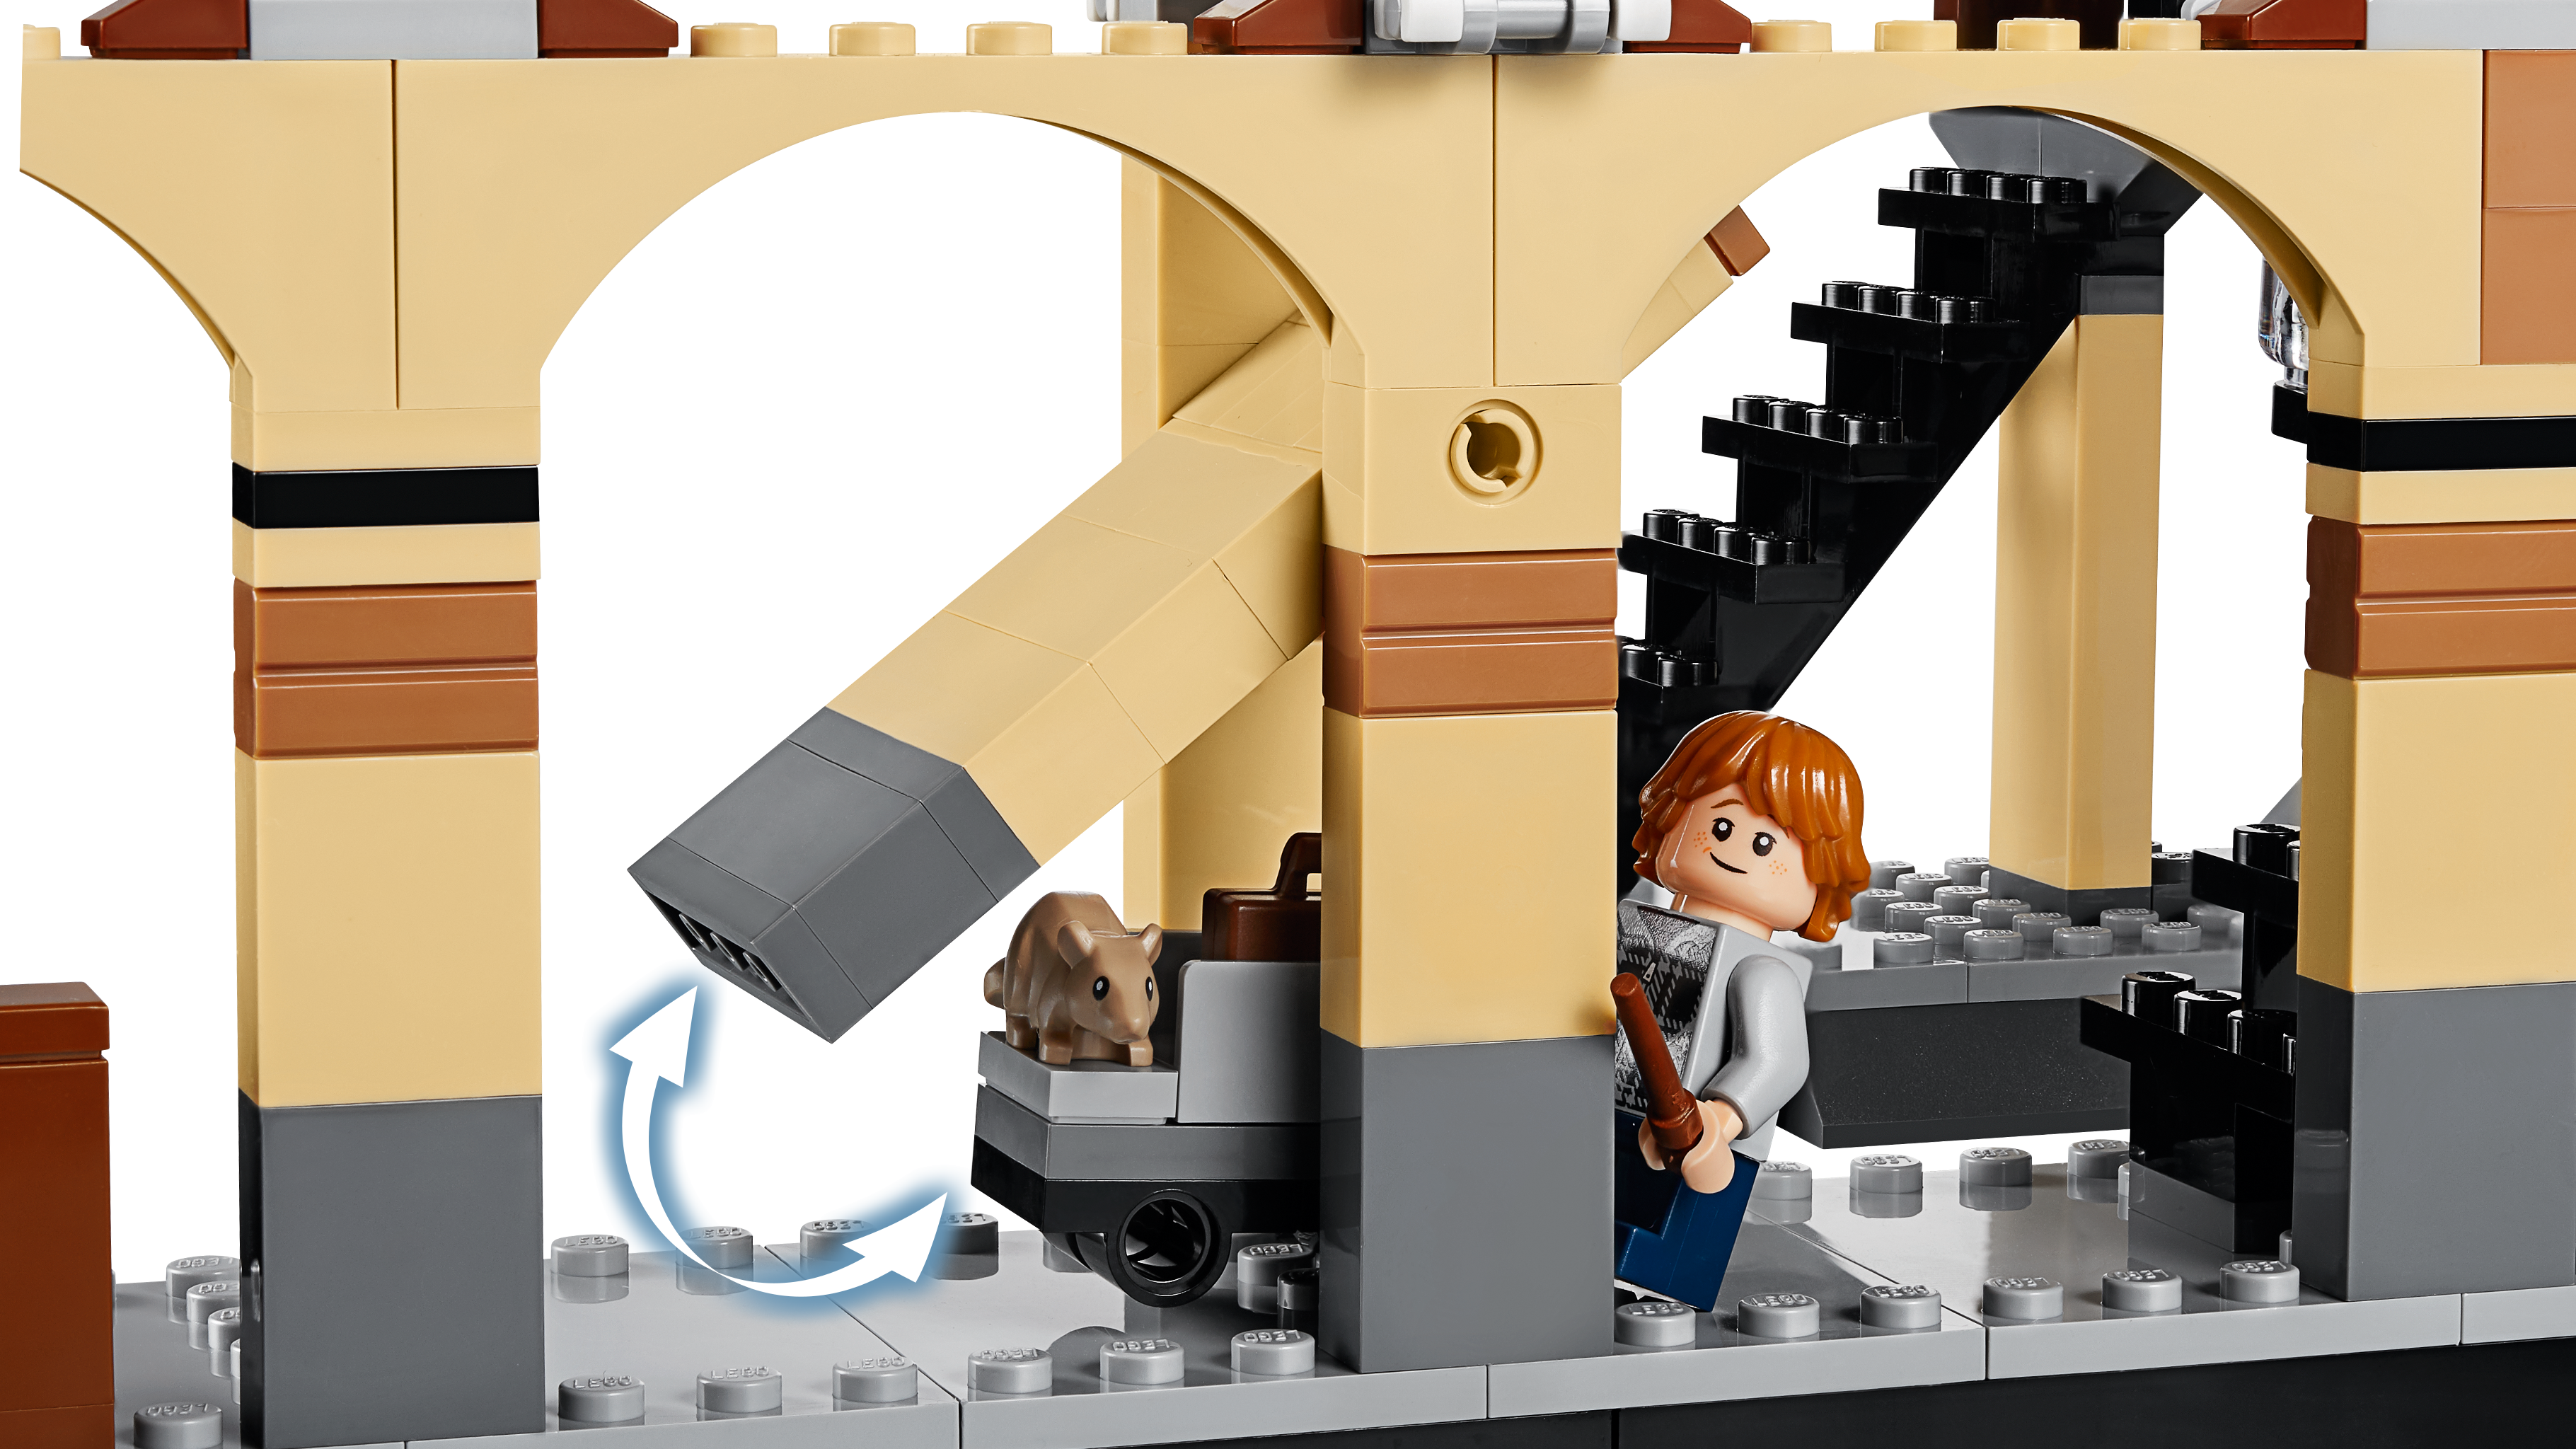 LEGO®  75955 Hogwarts™ Express 